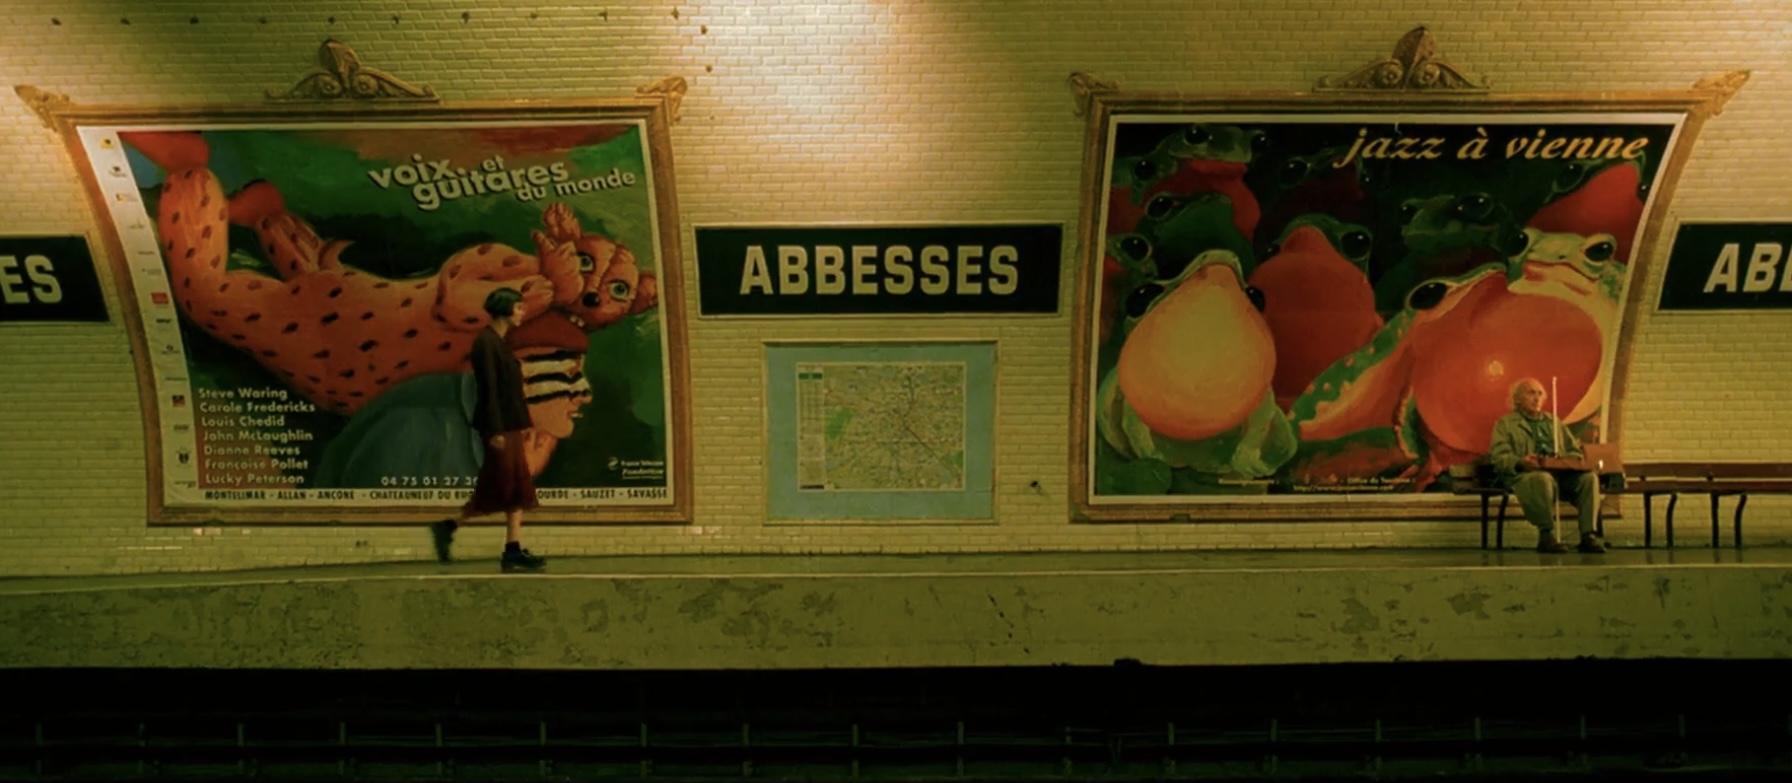 Cena do filme O Fabuloso Destino de Amélie Poulain. A imagem mostra a personagem de Amélie caminhando por uma estação de metrô, vista de longe e de perfil. A câmera está nos trilhos, capturando as paredes da área de embarque, que é preenchida por anúncios coloridos do lado esquerdo e direito, e no centro existe uma placa escrito "ABESSES". Amélie está do lado esquerdo, usando um vestido vermelho e botas pretas.